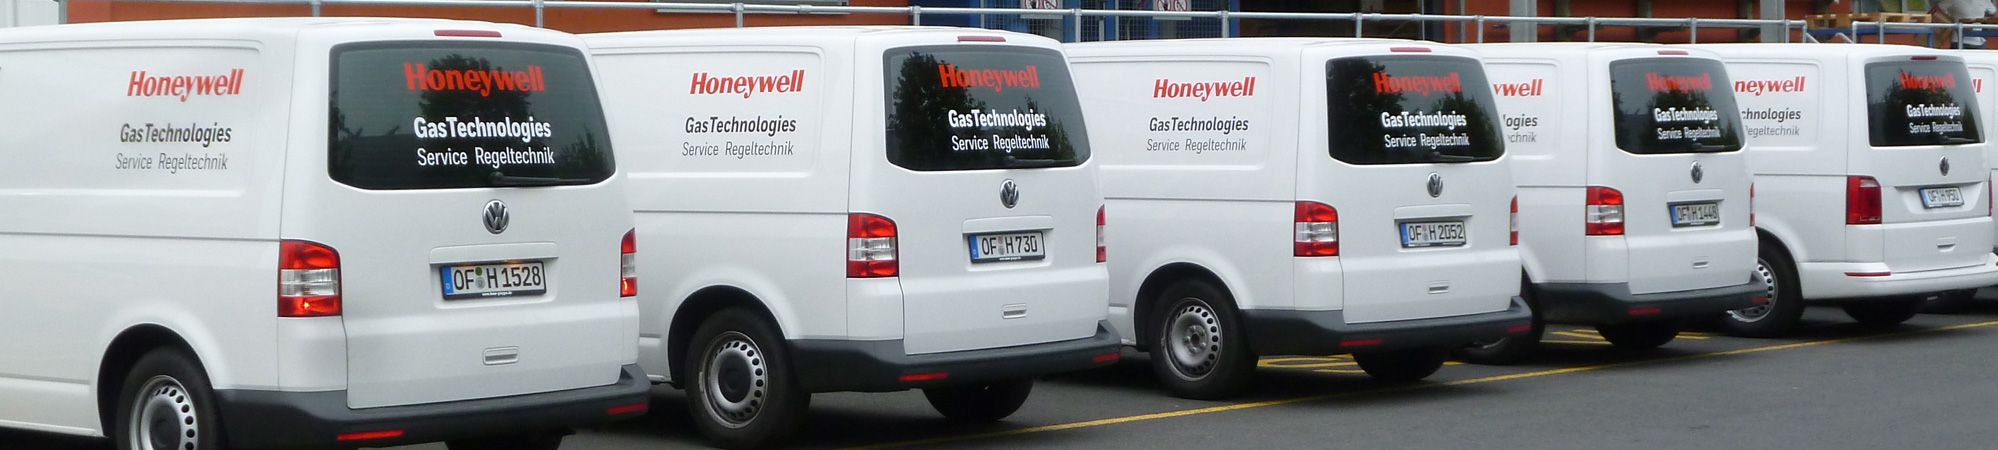 Eine Reihe von 5 Kundendienst-Fahrzeugen der Honywell Gas Technologies GmbH